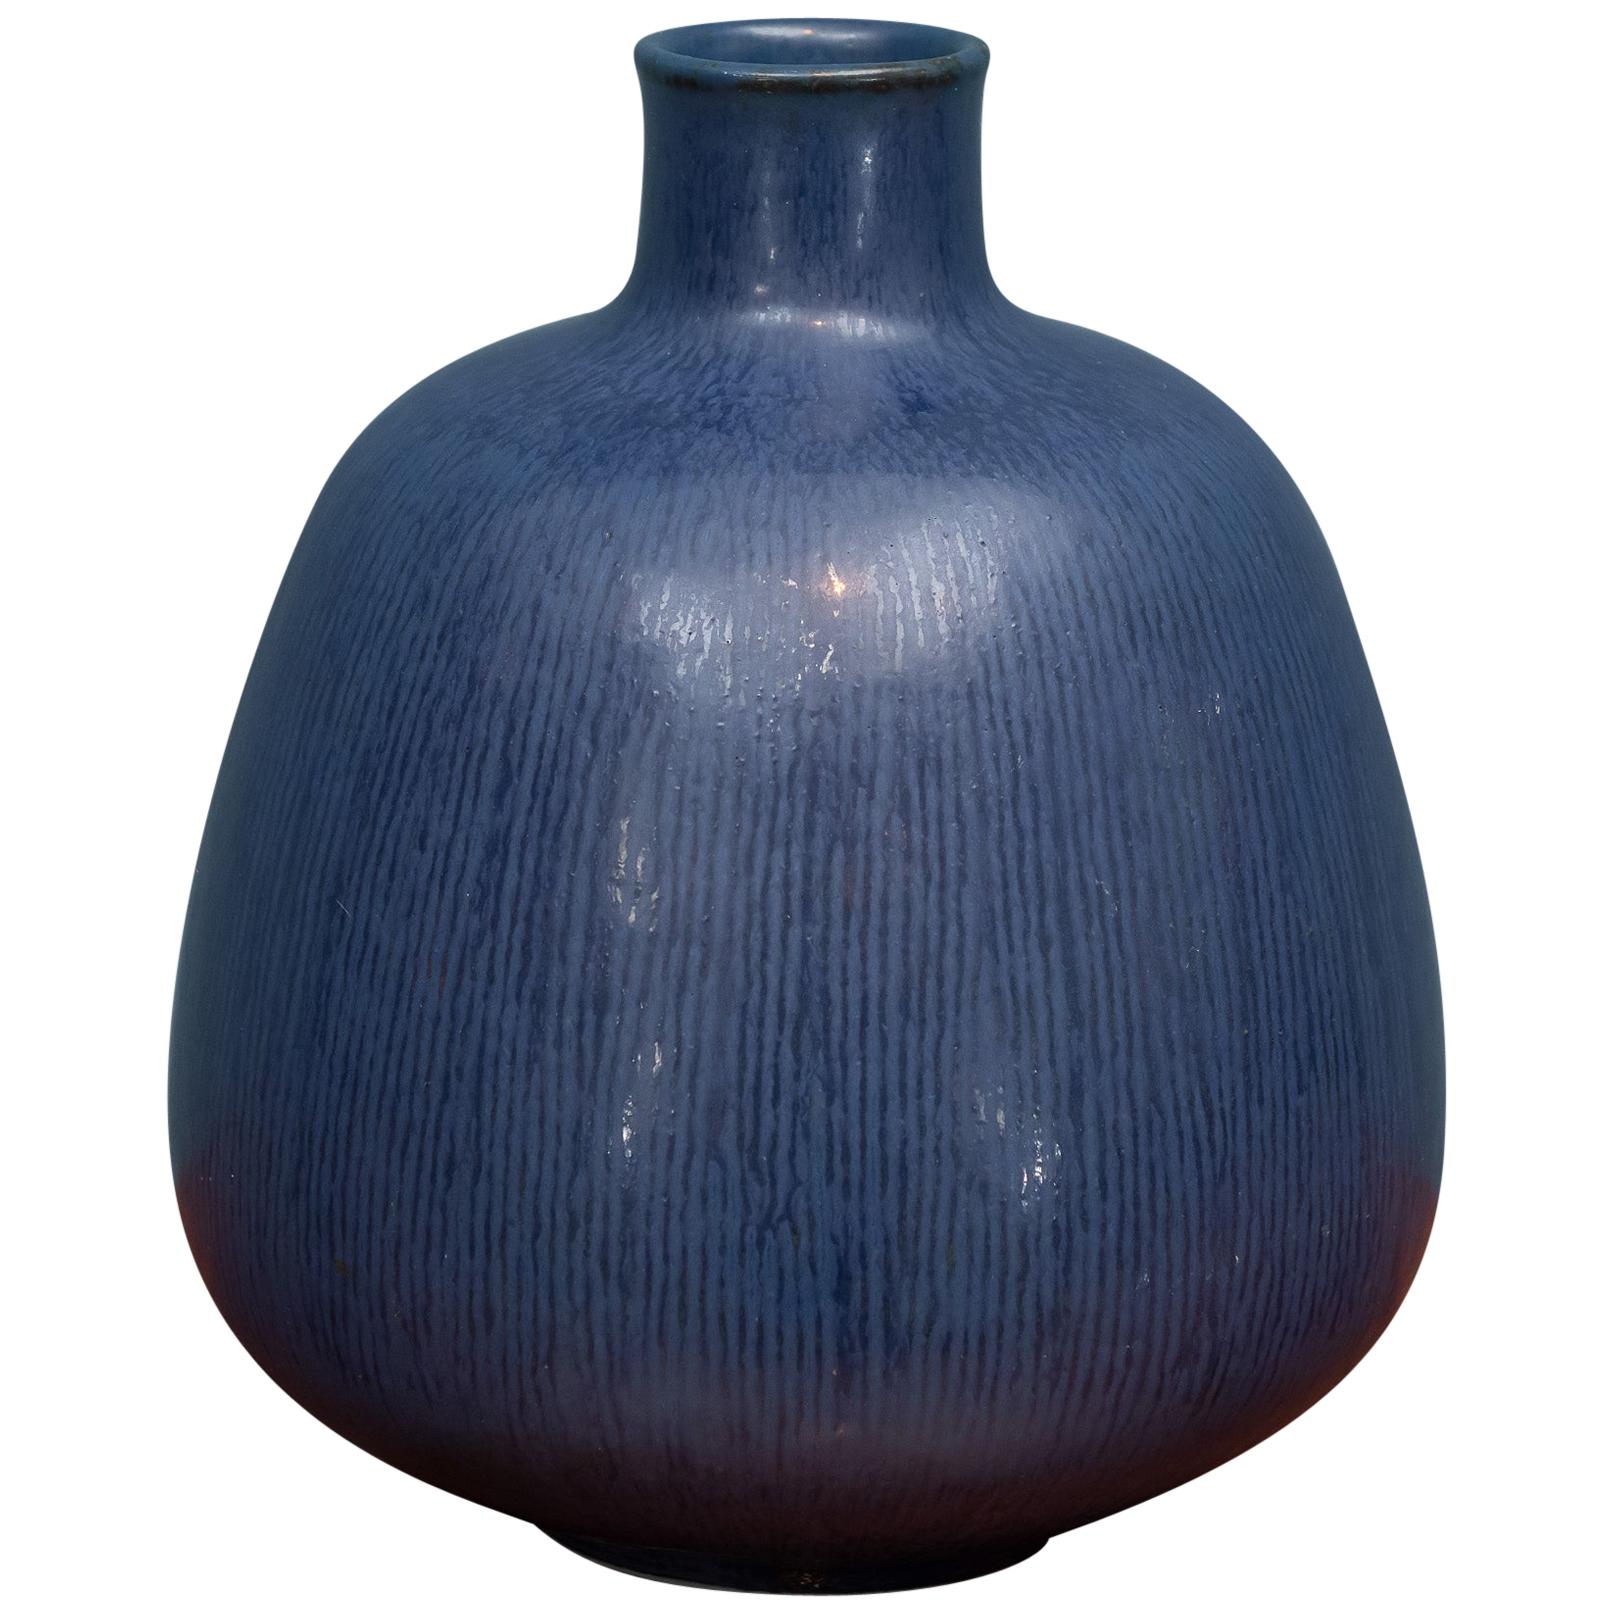 Saxbo Ceramic Vase